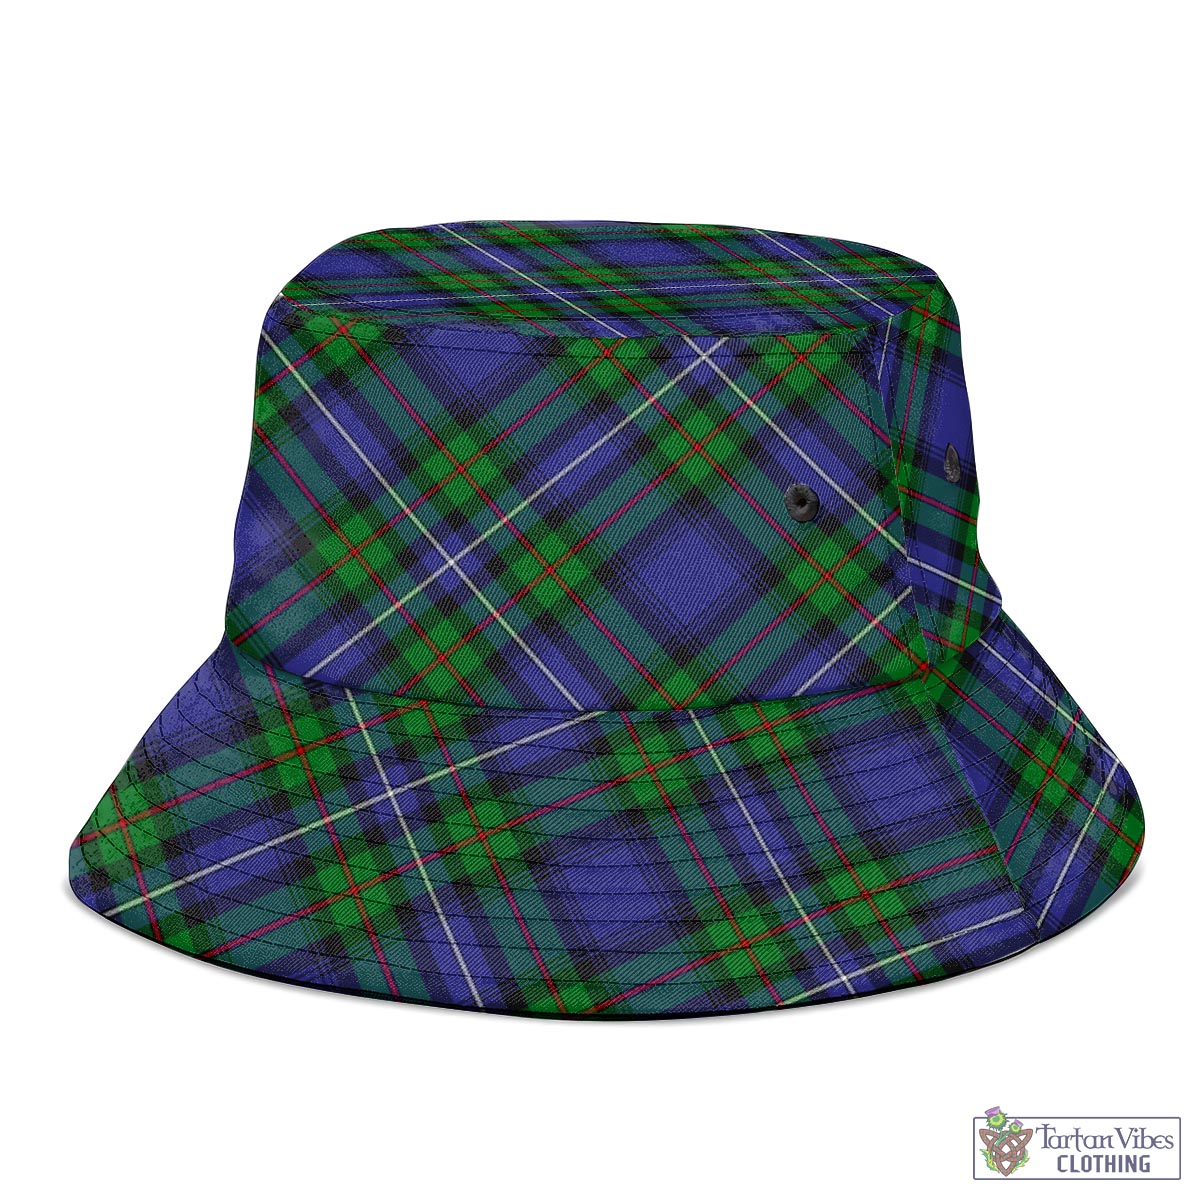 Tartan Vibes Clothing Donnachaidh Tartan Bucket Hat